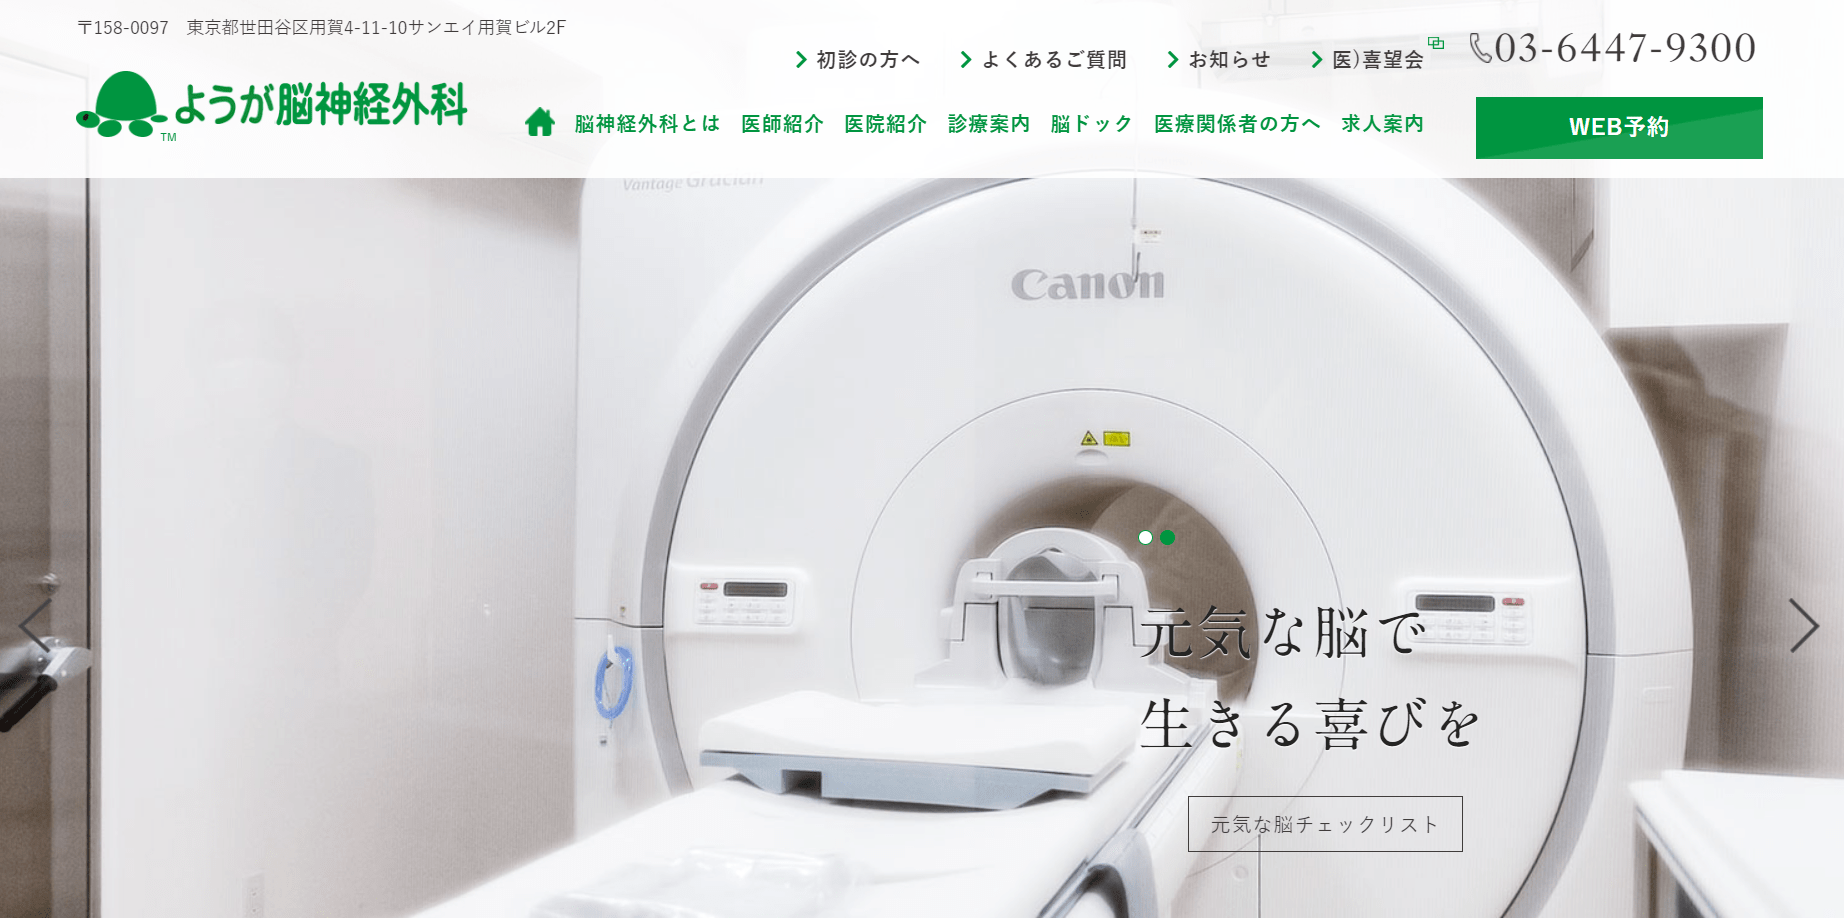 東京都で評判の脳神経外科におすすめのクリニック10選 ようが脳神経外科